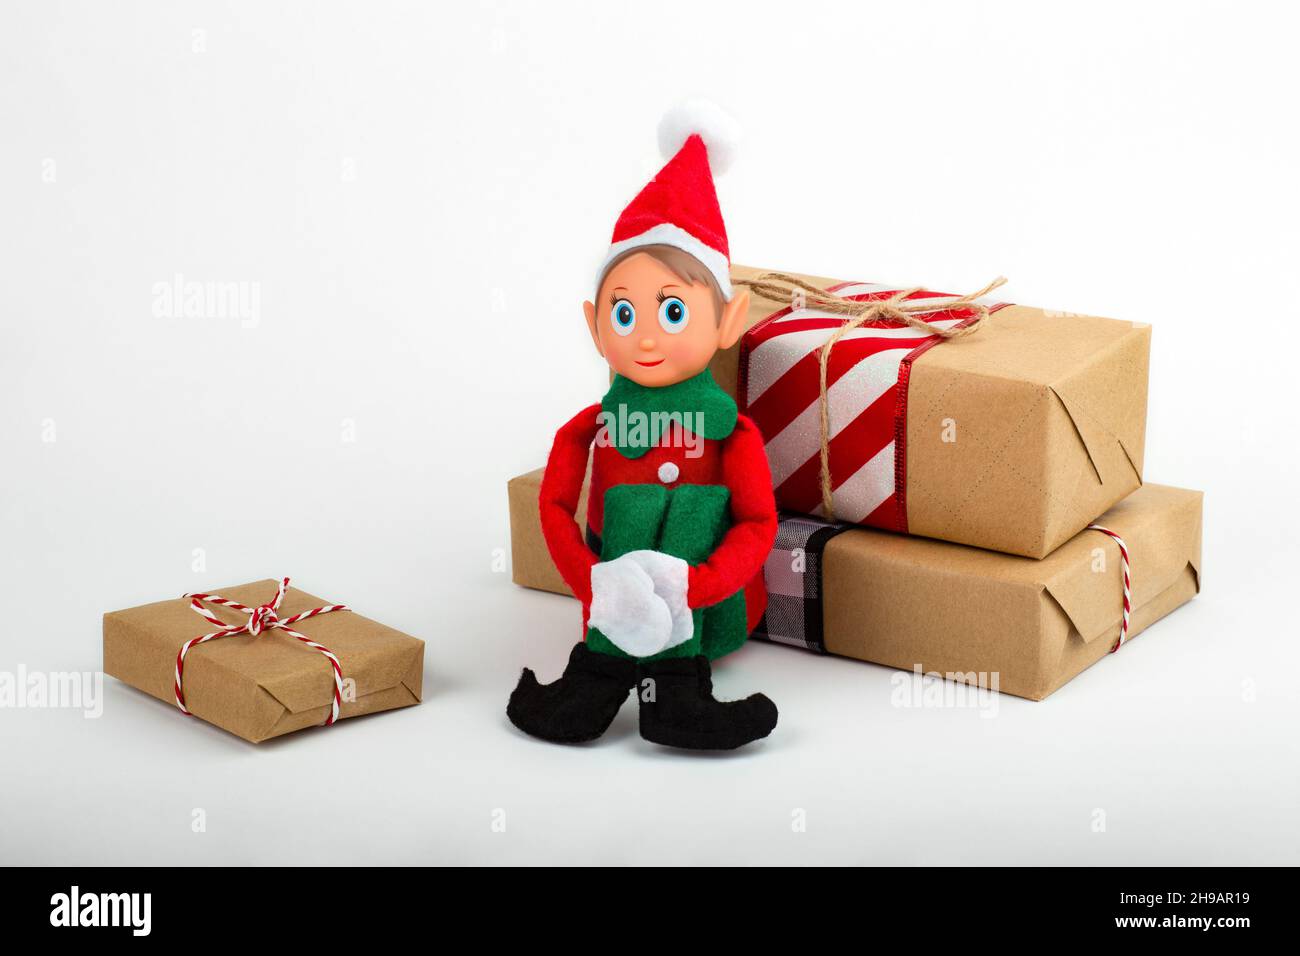 Weihnachts-Elf-Spielzeug mit Geschenkschachteln auf weißem Hintergrund mit Kopierfläche. Weihnachtsstimmung, Weihnachtstradition. Stockfoto